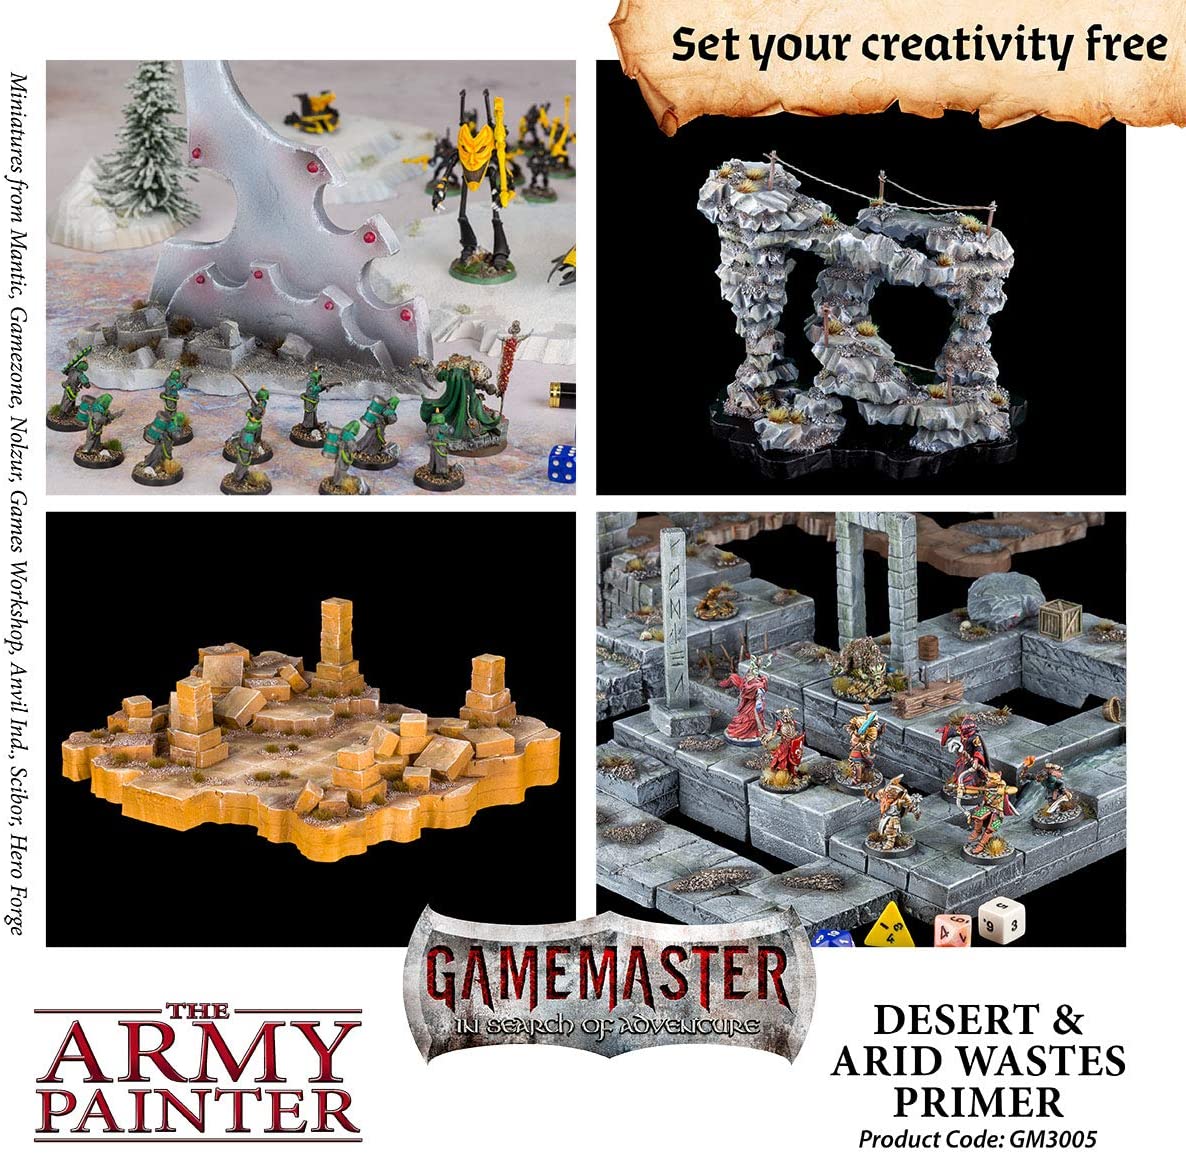 The Army Painter - Gamemaster: Desert & Arid Wastes Terrain Primer